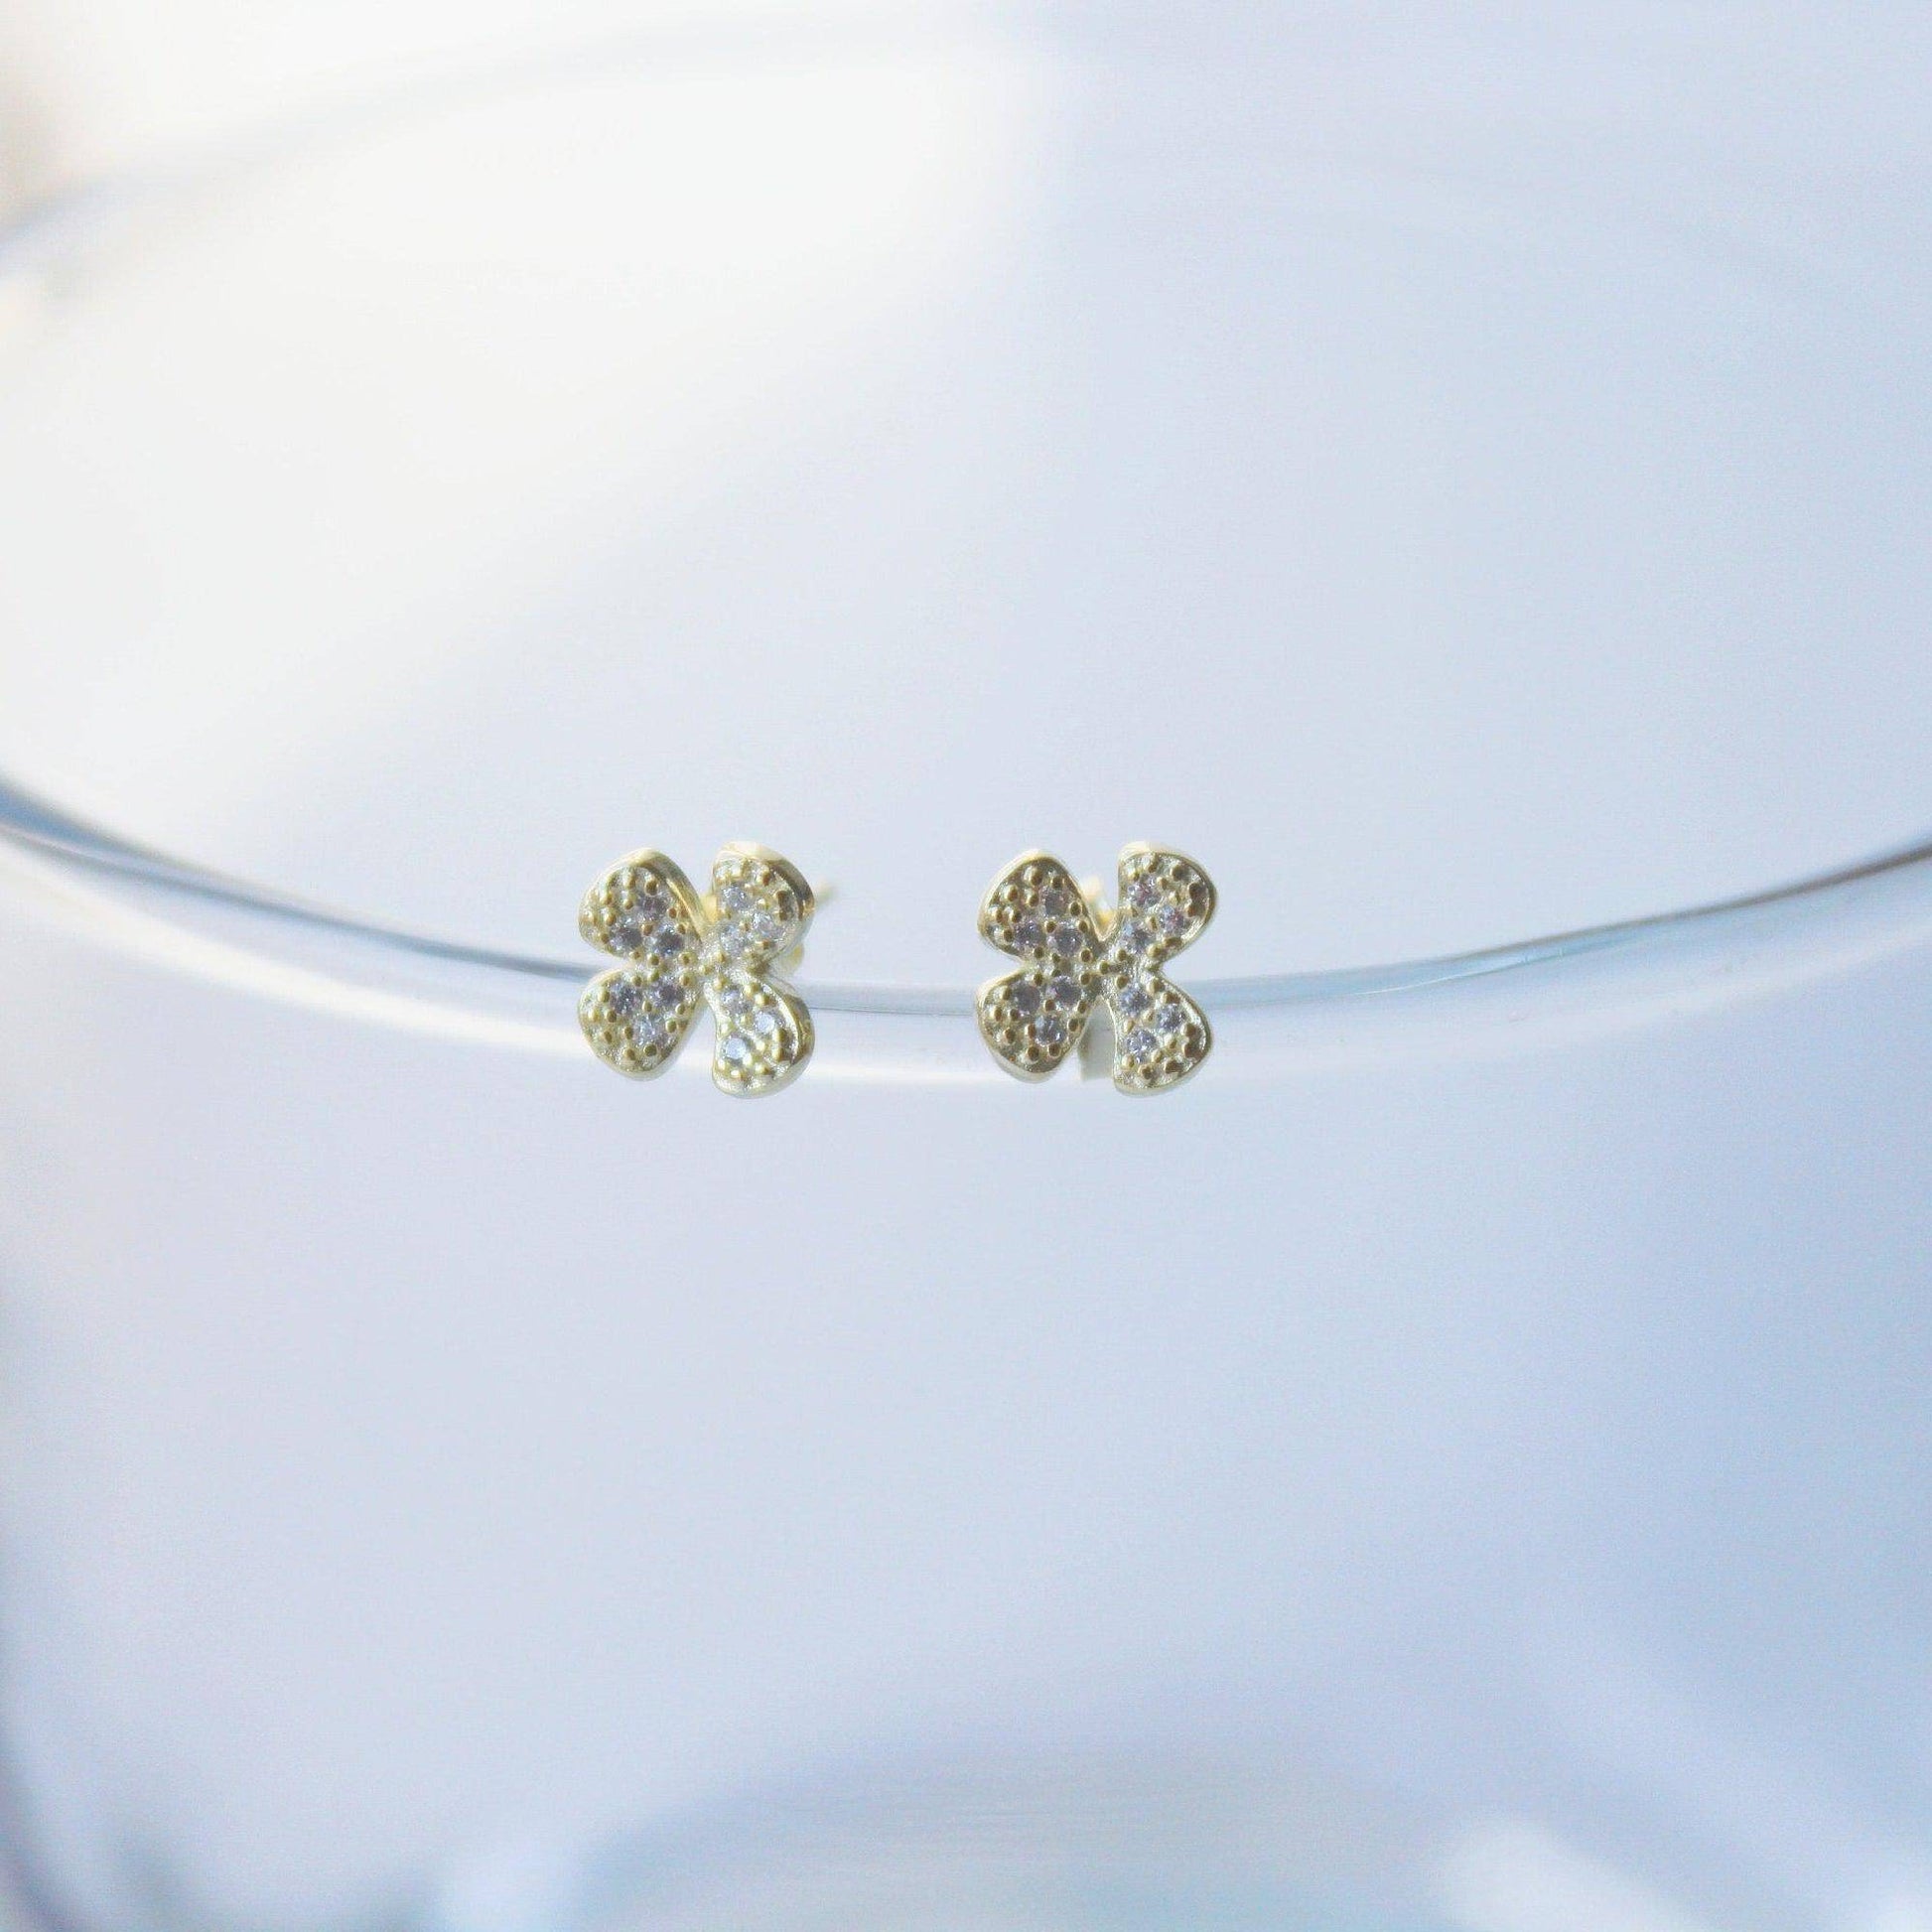 Shamrock Earrings - Gold Four leaf Clover Sterling Silver Stud Earrings-Ninaouity